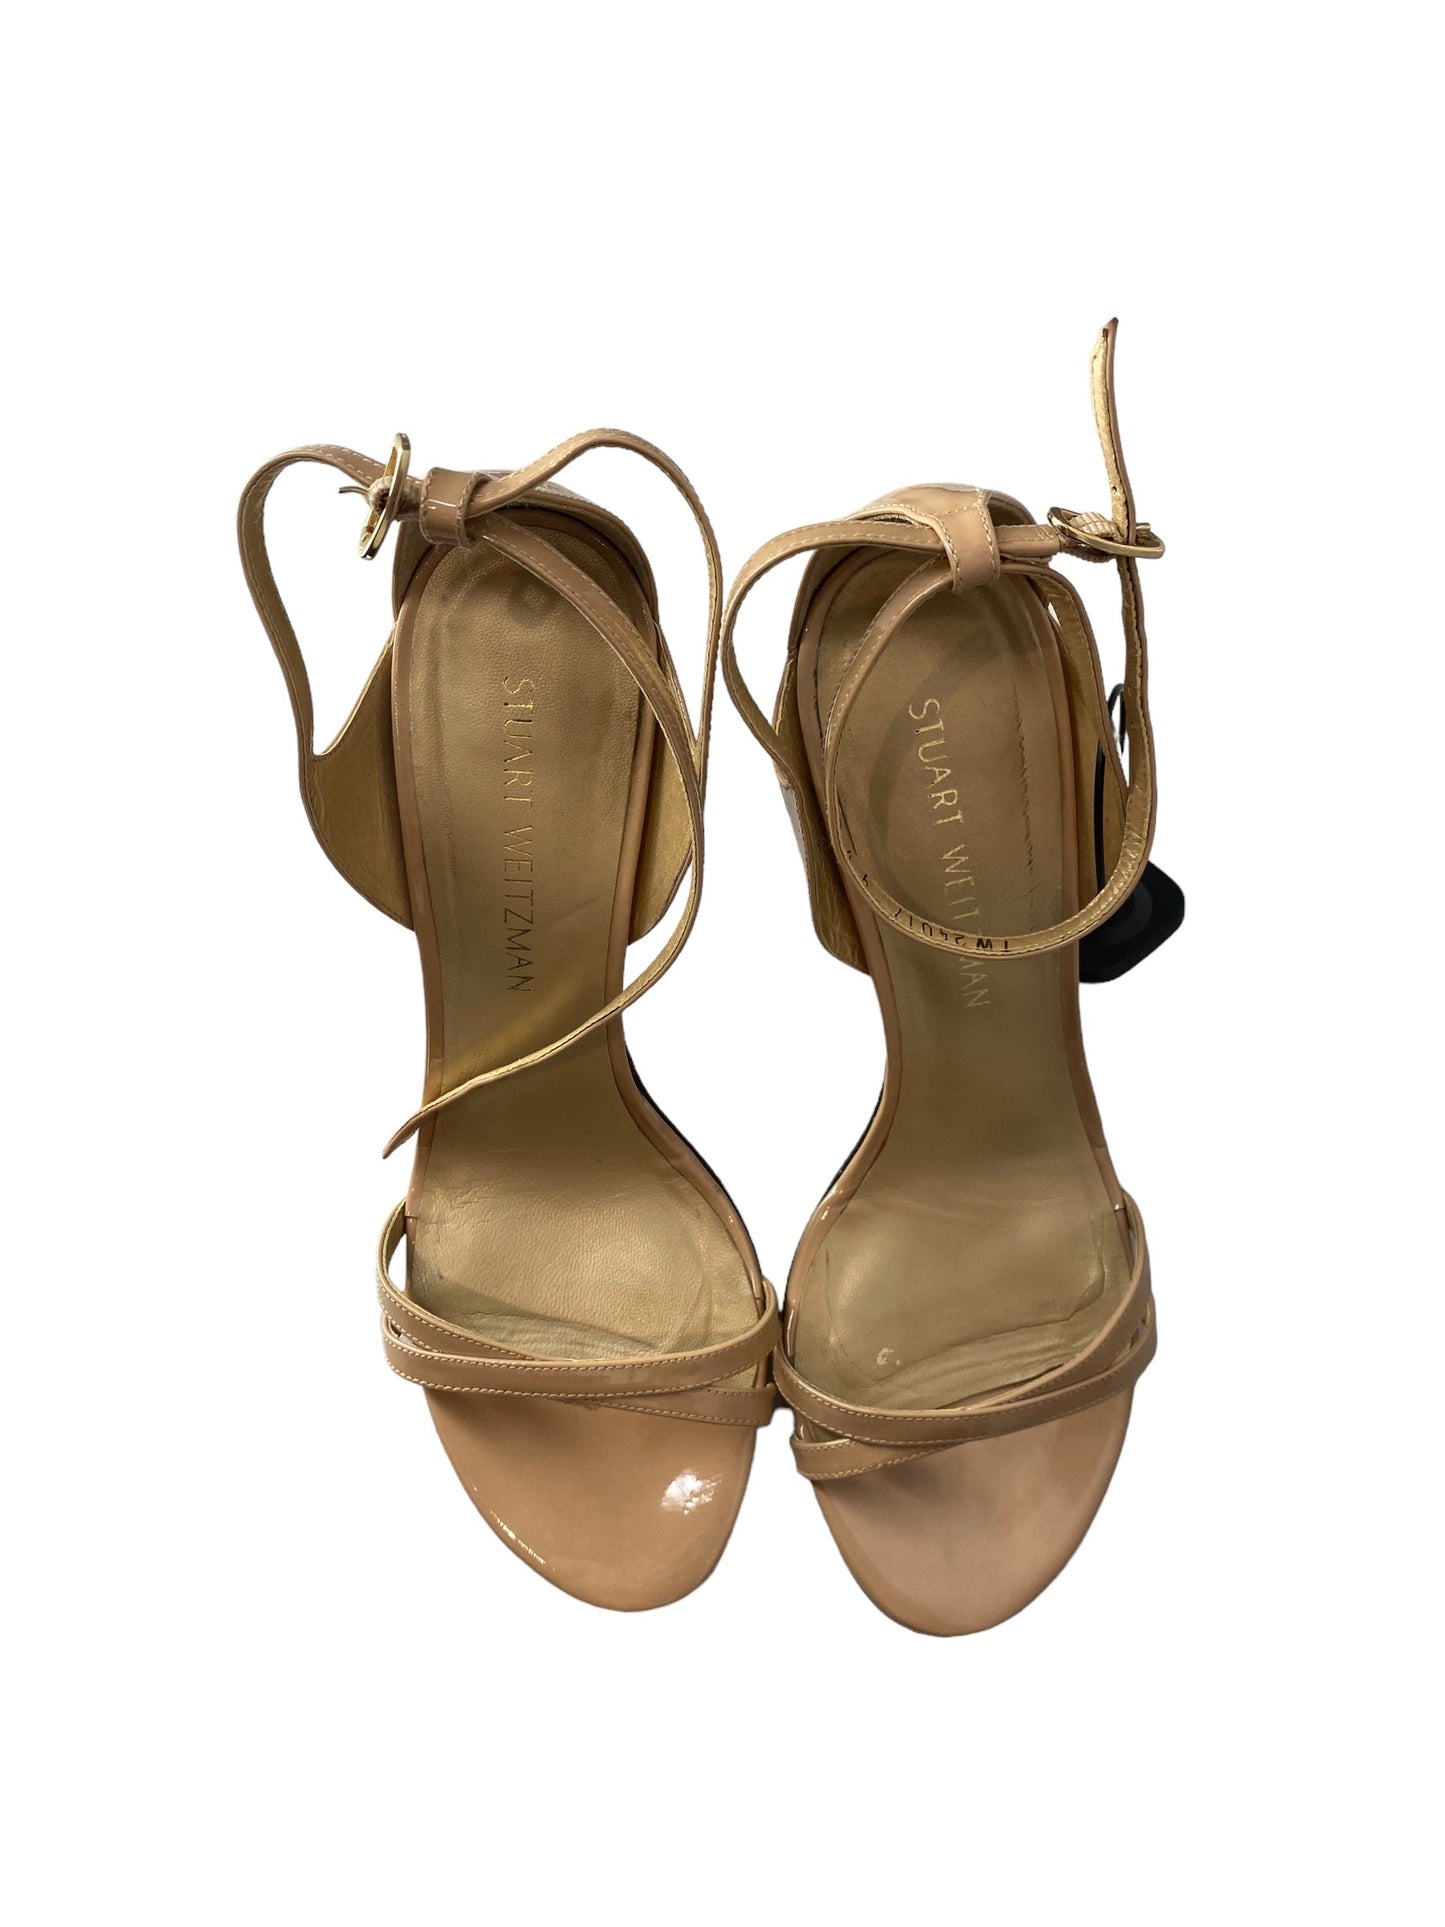 Sandals Heels Stiletto By Stuart Weitzman  Size: 9.5